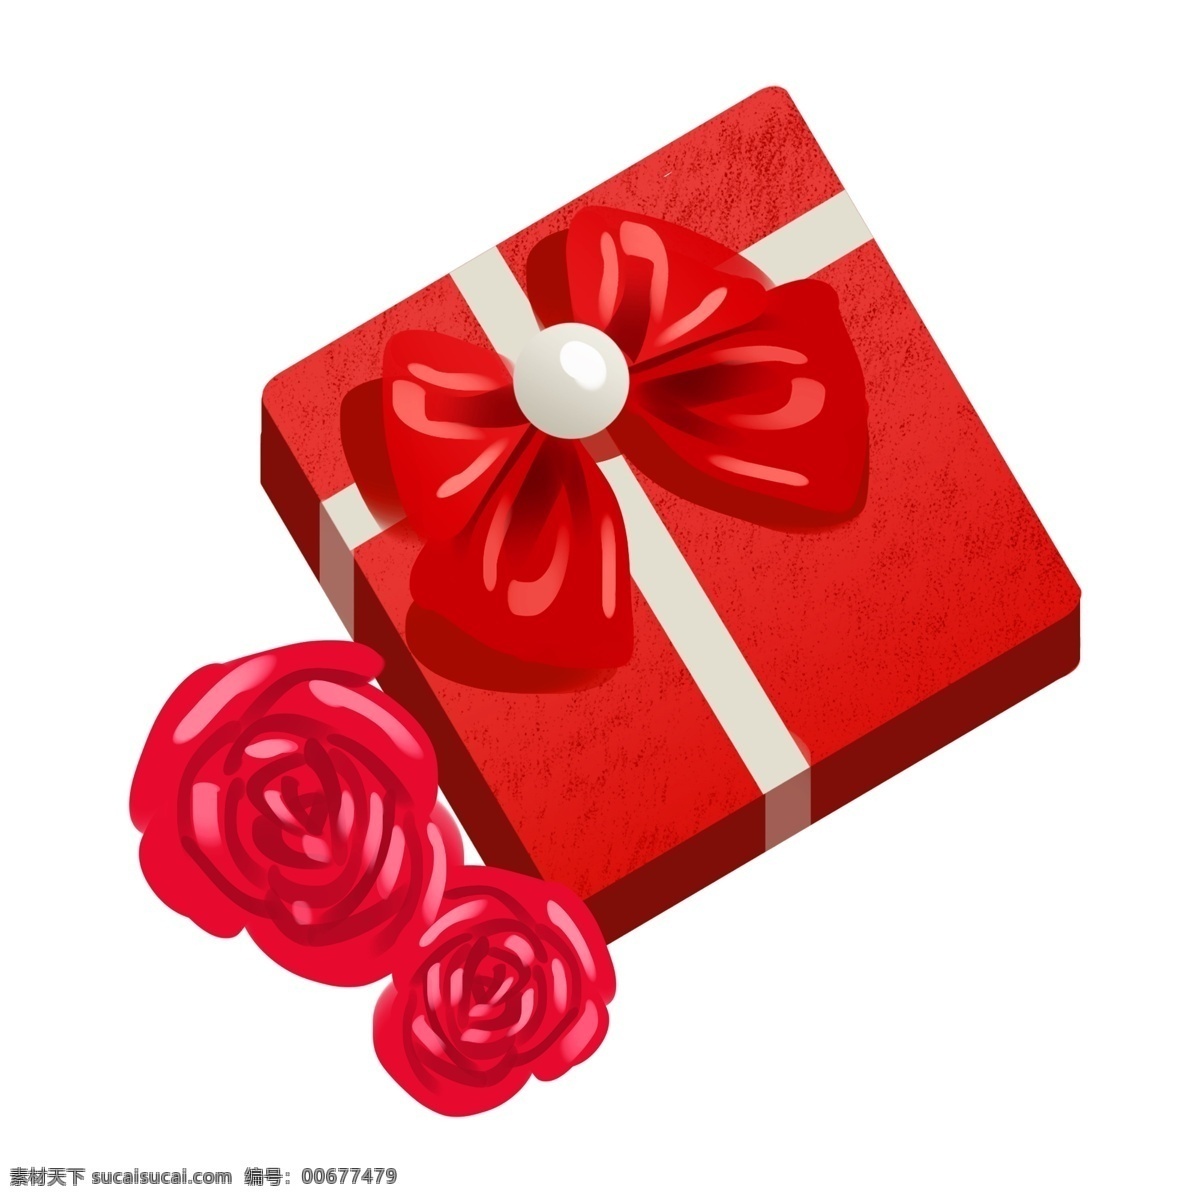 情人节 红色 礼物 插画 红色盒子 红色玫瑰花 红玫瑰 浪漫 红色蝴蝶结 红色礼物 鲜花 鲜艳 花朵 白色珠子